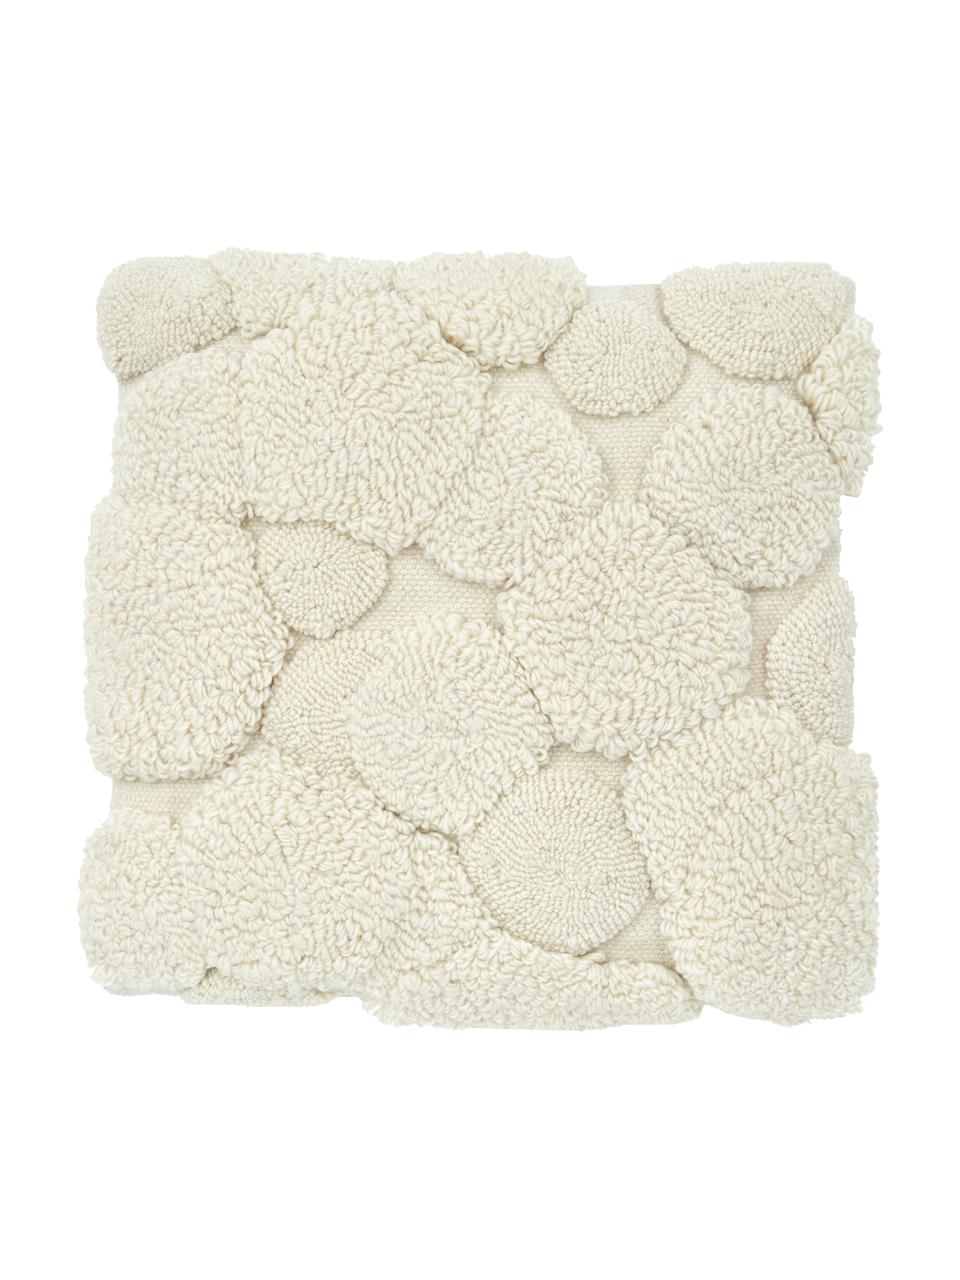 Kissenhülle Bubble mit Hoch-Tief-Struktur, Vorderseite: 80% Wolle, 20% Baumwolle, Rückseite: 100% Baumwolle, Beige, B 45 x L 45 cm